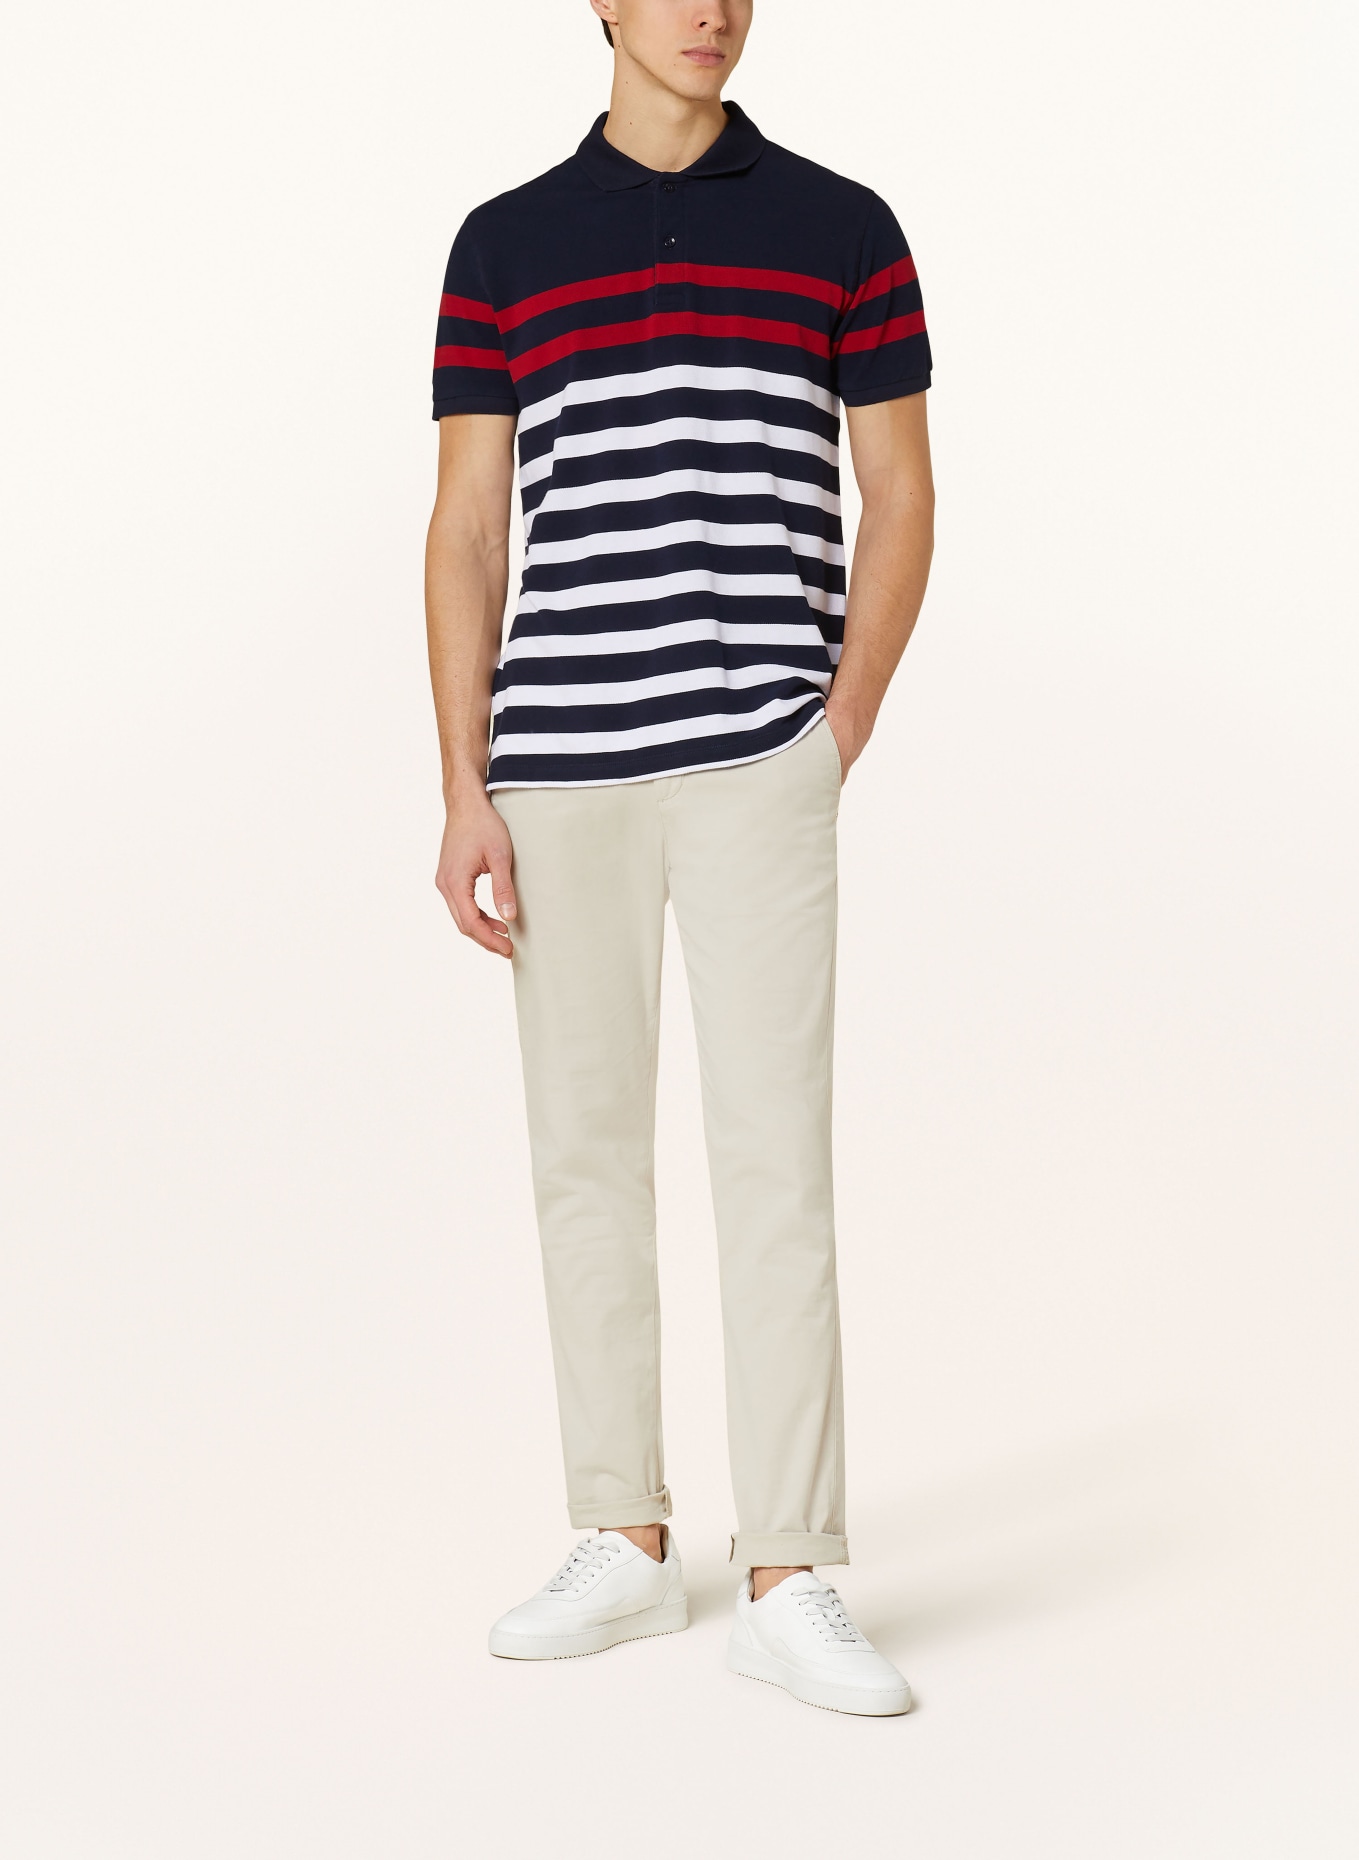 STROKESMAN'S Piqué polo shirt, Color: DARK BLUE/ WHITE/ RED (Image 2)